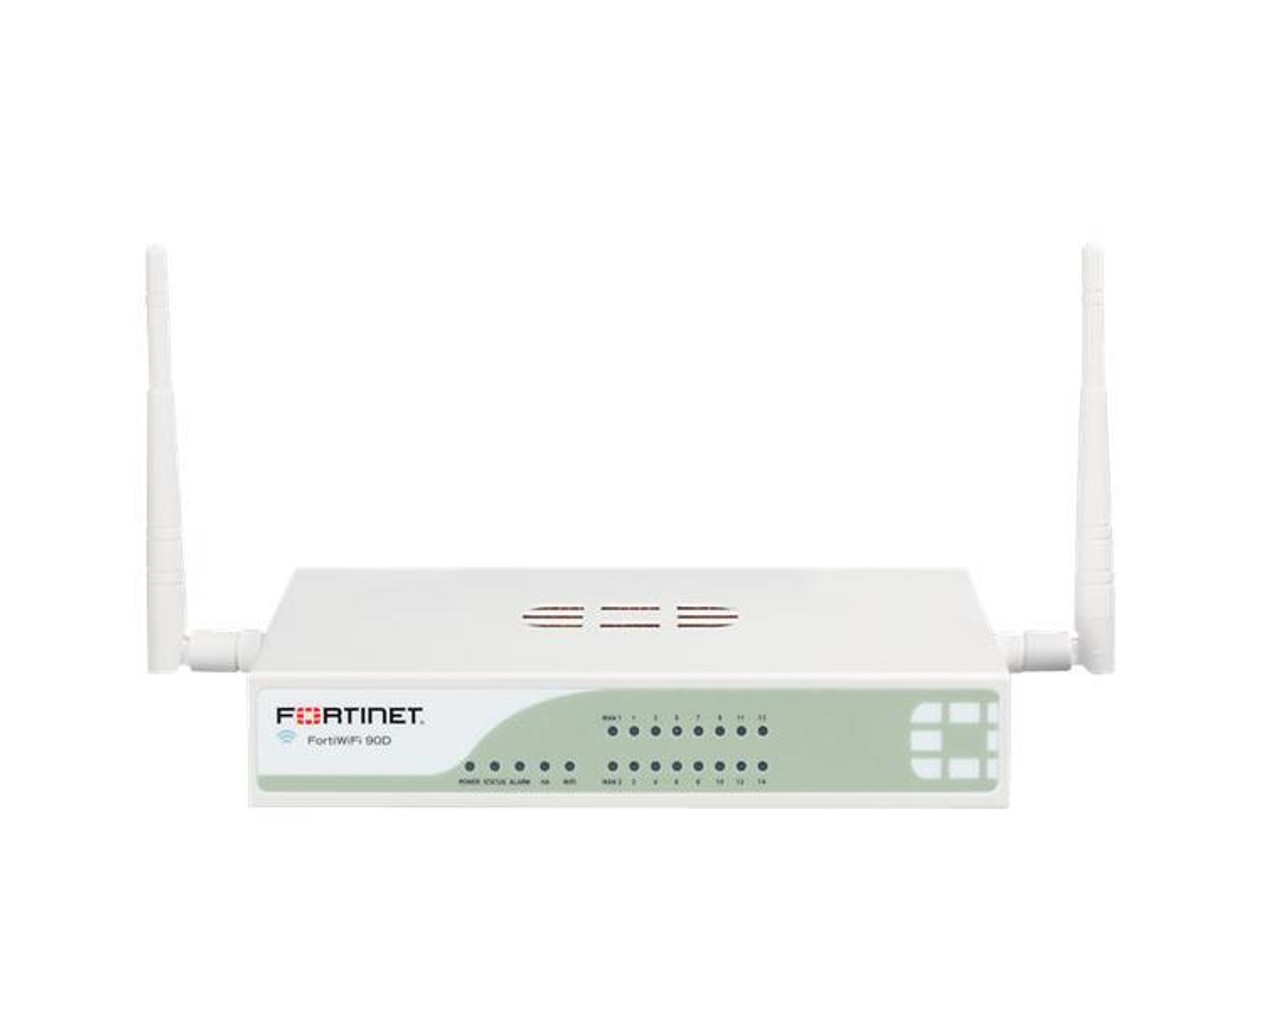 Fortinet FortiWifi 90D Network Security/Firewall Appliance - 16 Port - Gigabit Ethernet - Wireless LAN IEEE 802.11a/n - 16 x RJ-45 -